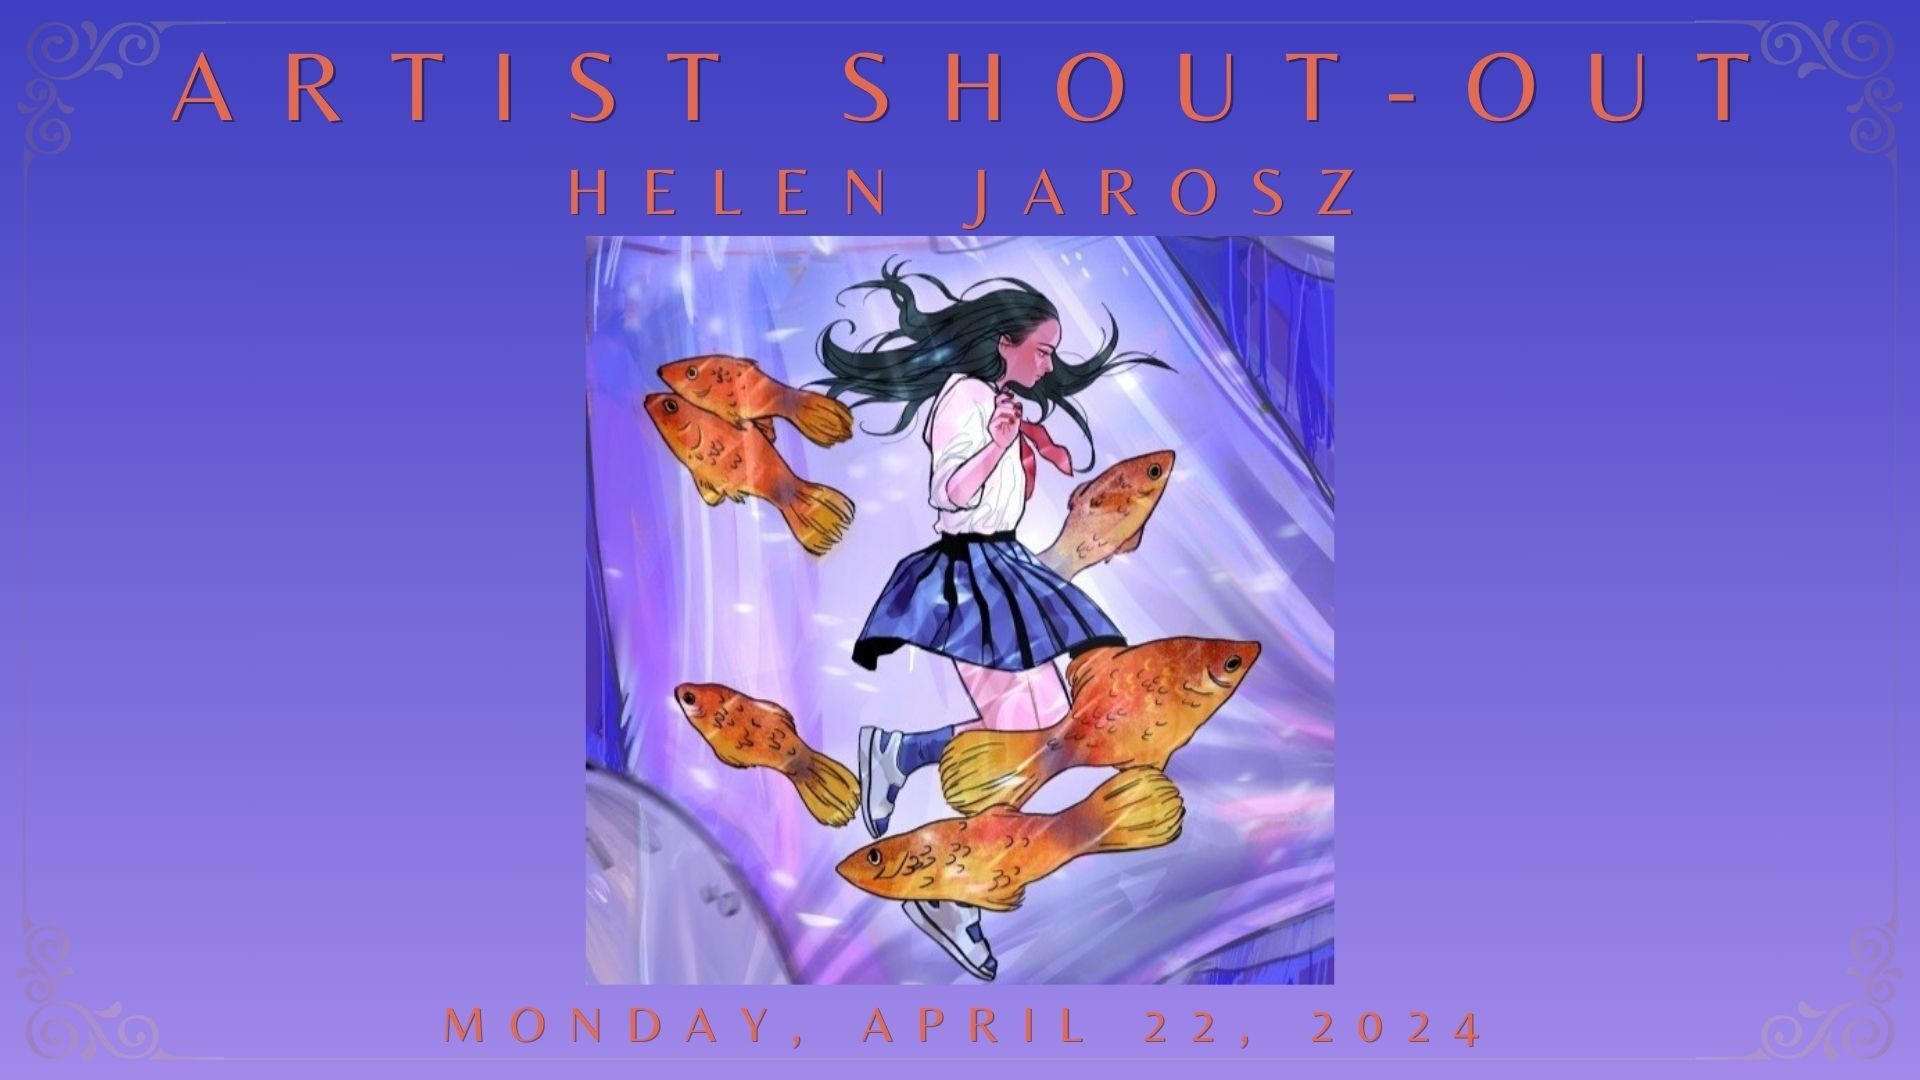 ARTIST SHOUT-OUT: Monday, April 22, 2024